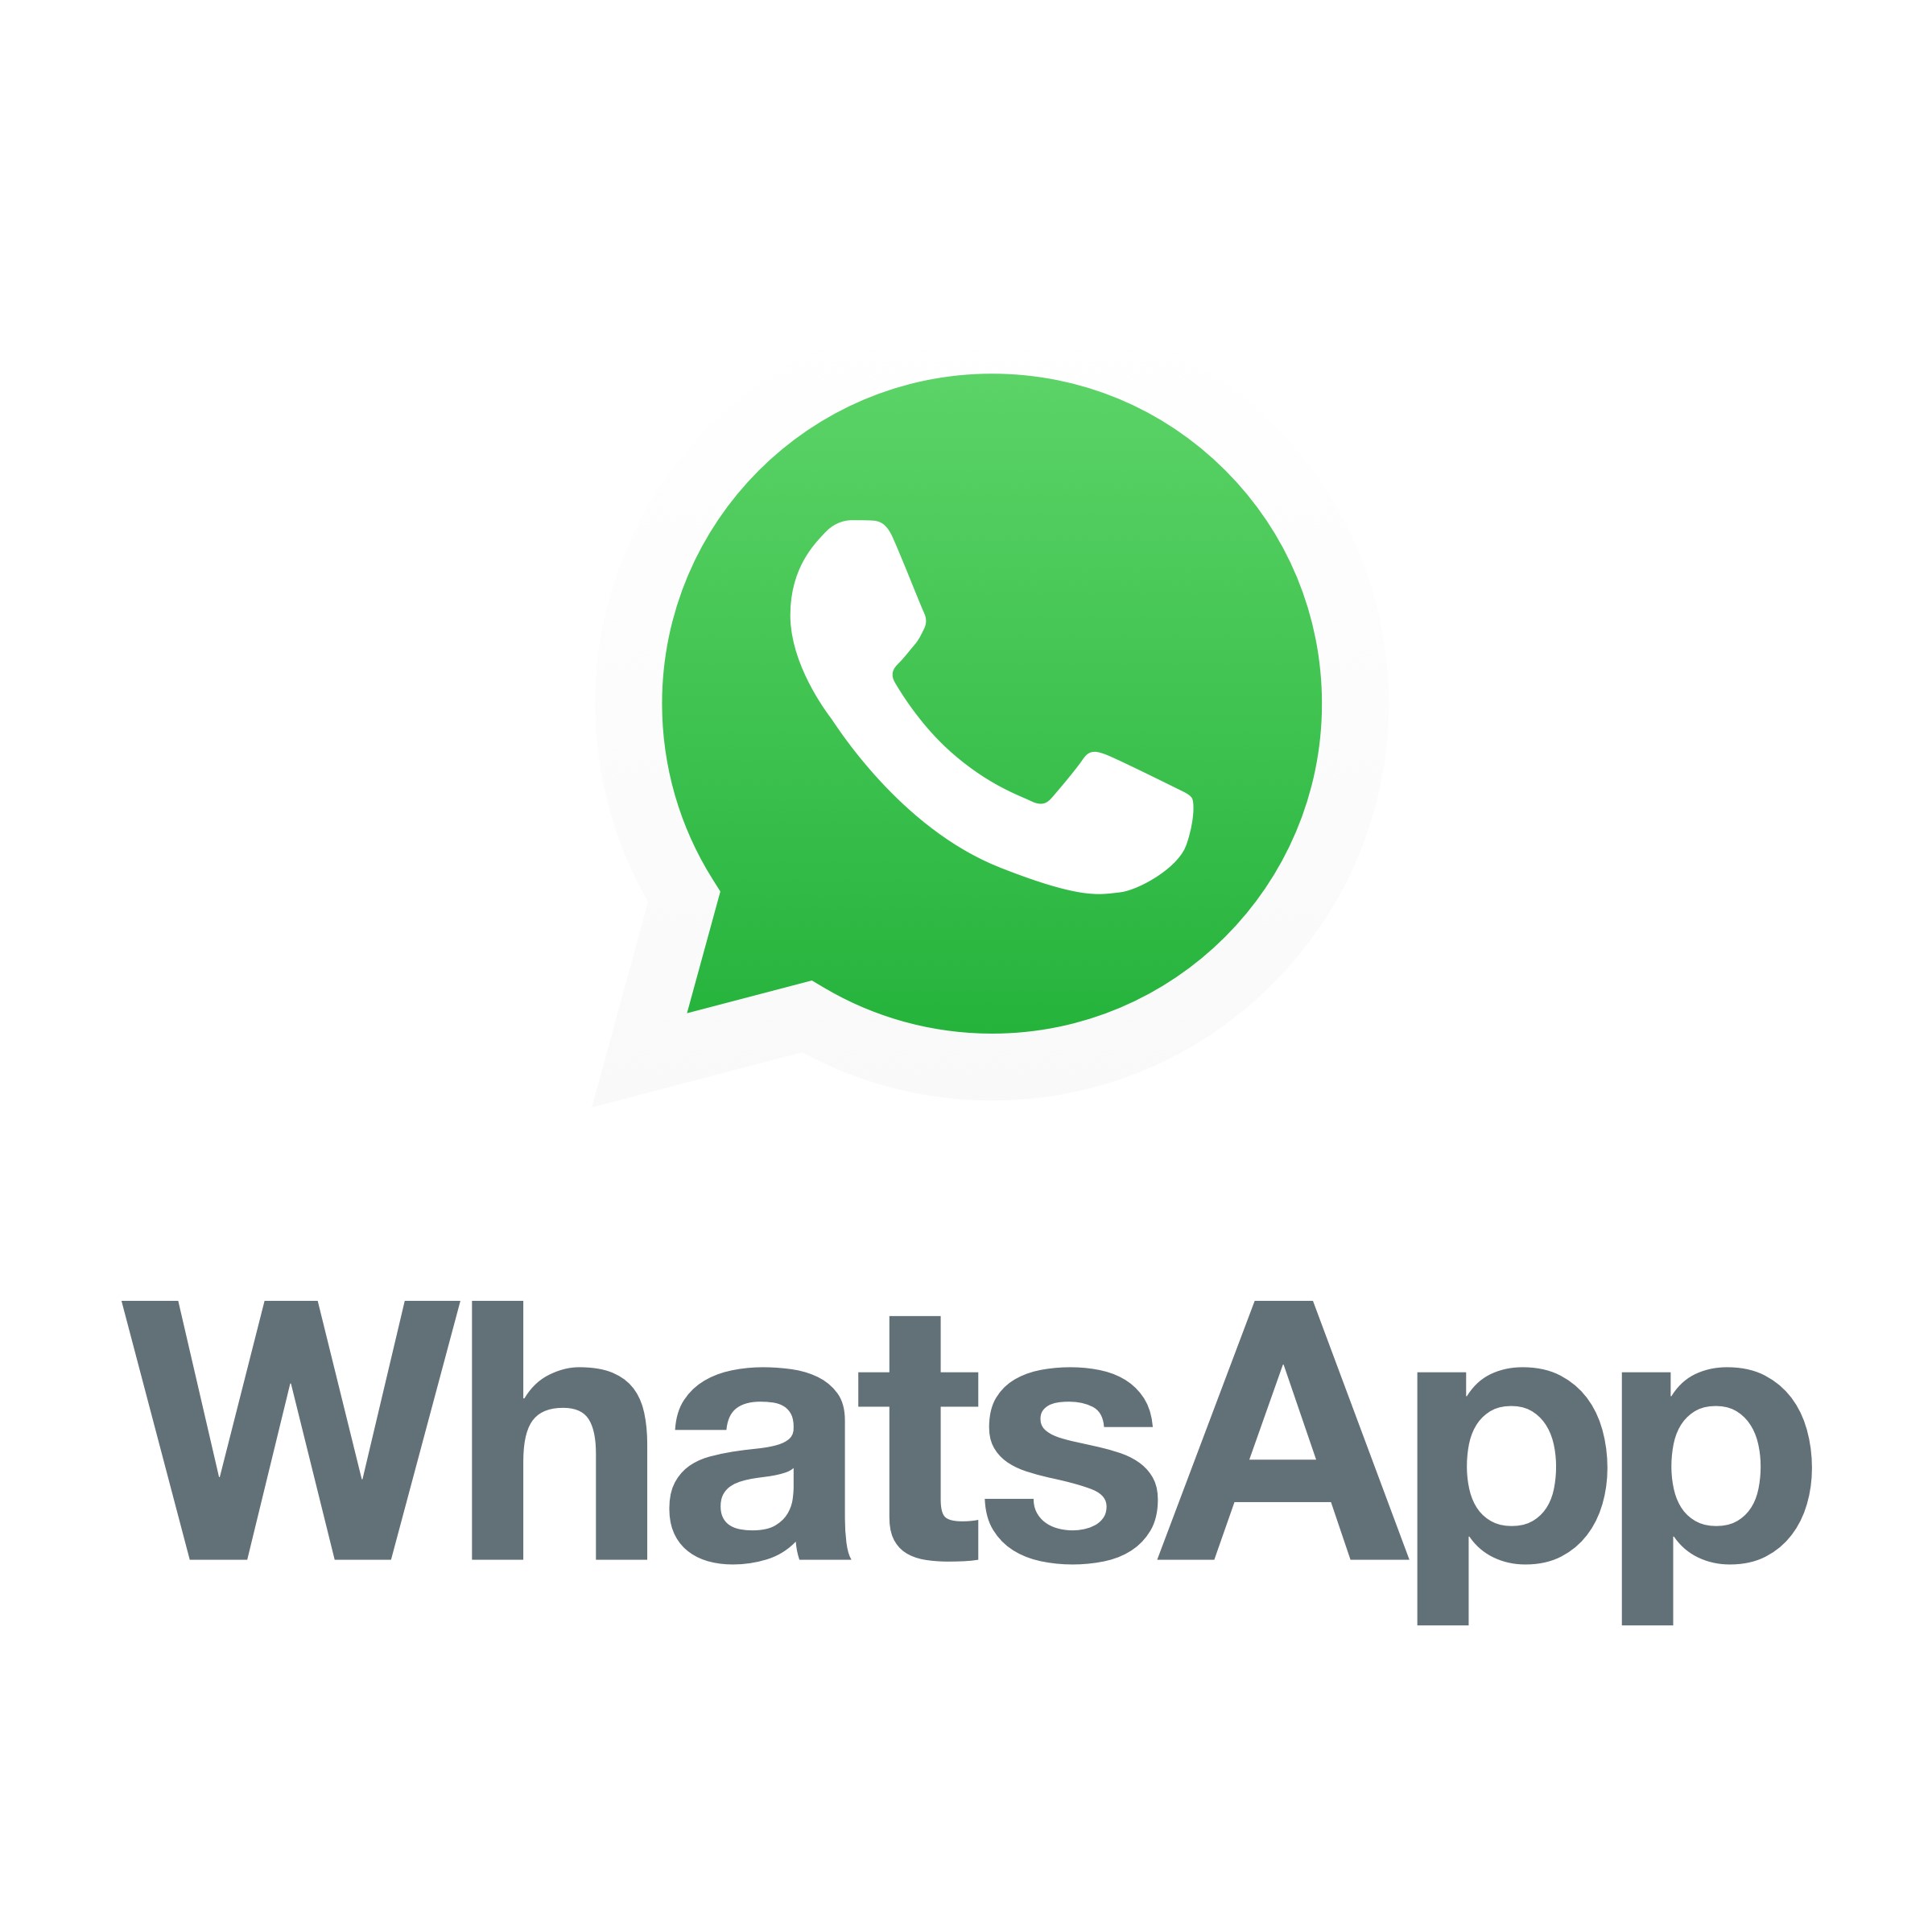 whatsapp直登号购买 | 一站式即时通讯服务解锁